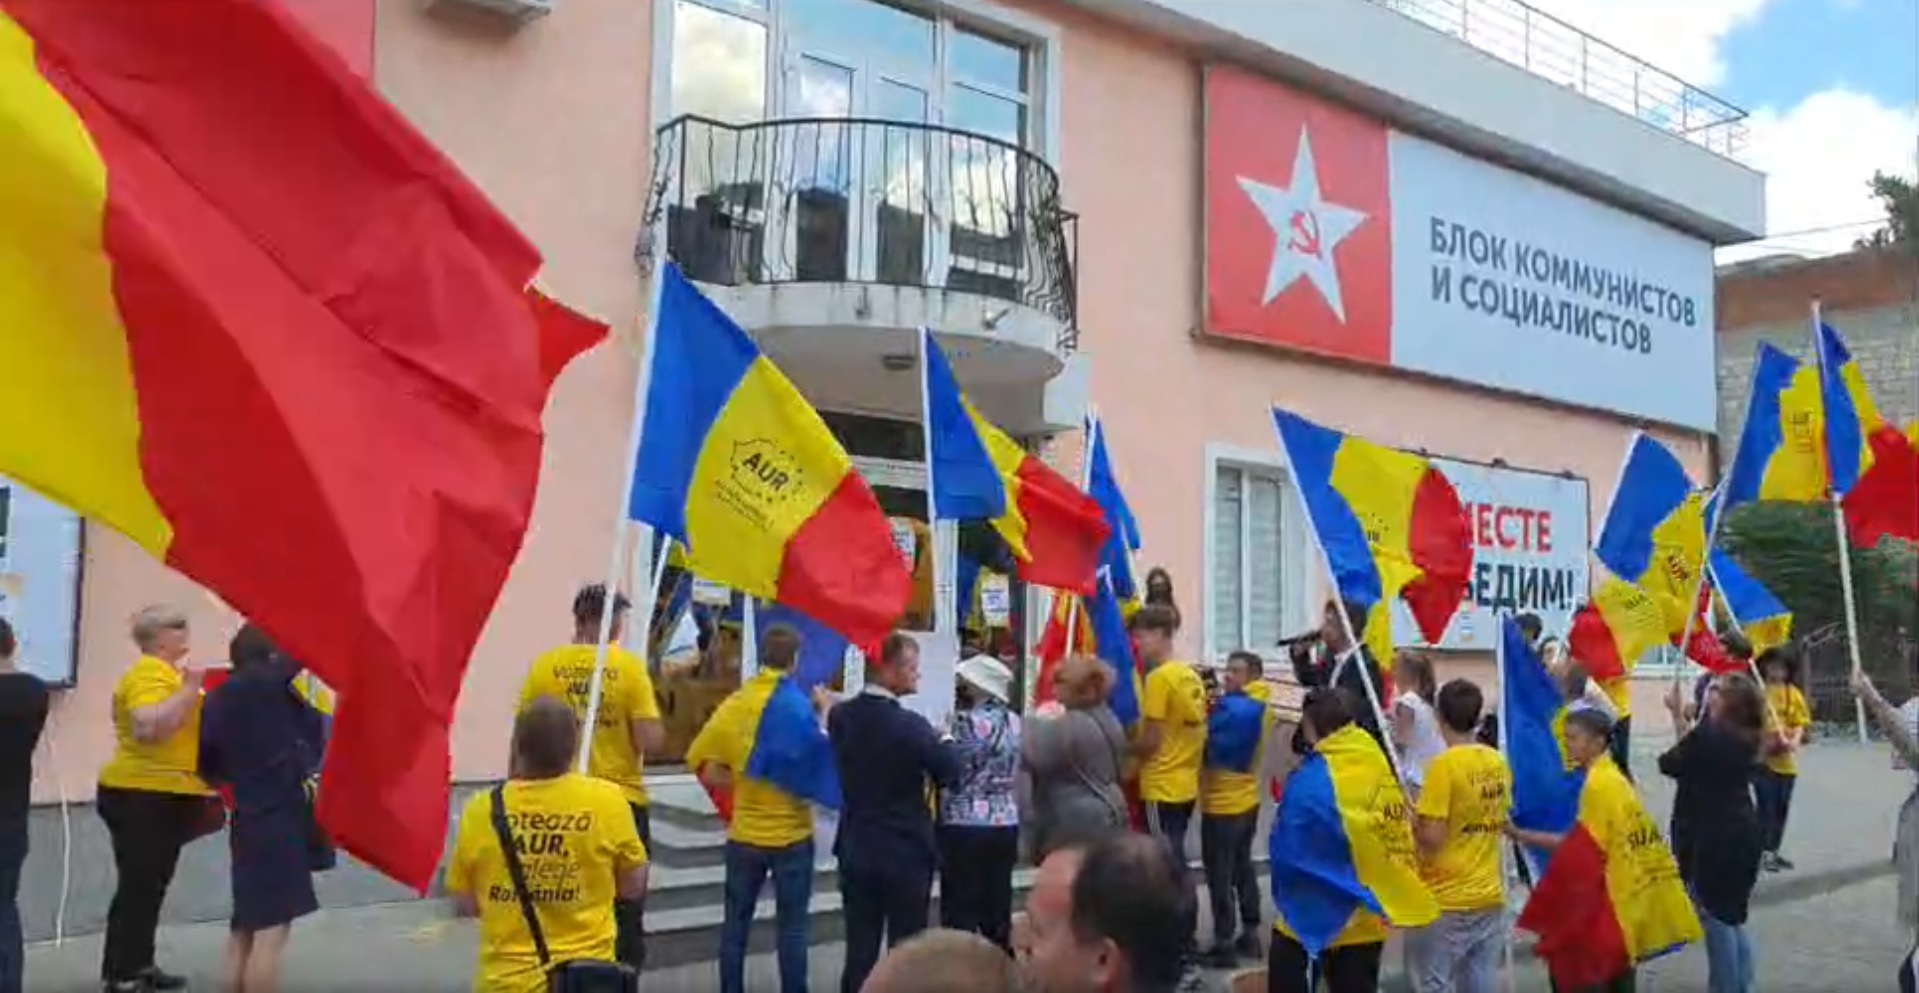 AUR a protestat la sediul PSRM. Țîrdea și Batrîncea au ieșit în fața manifestanților (FOTO)